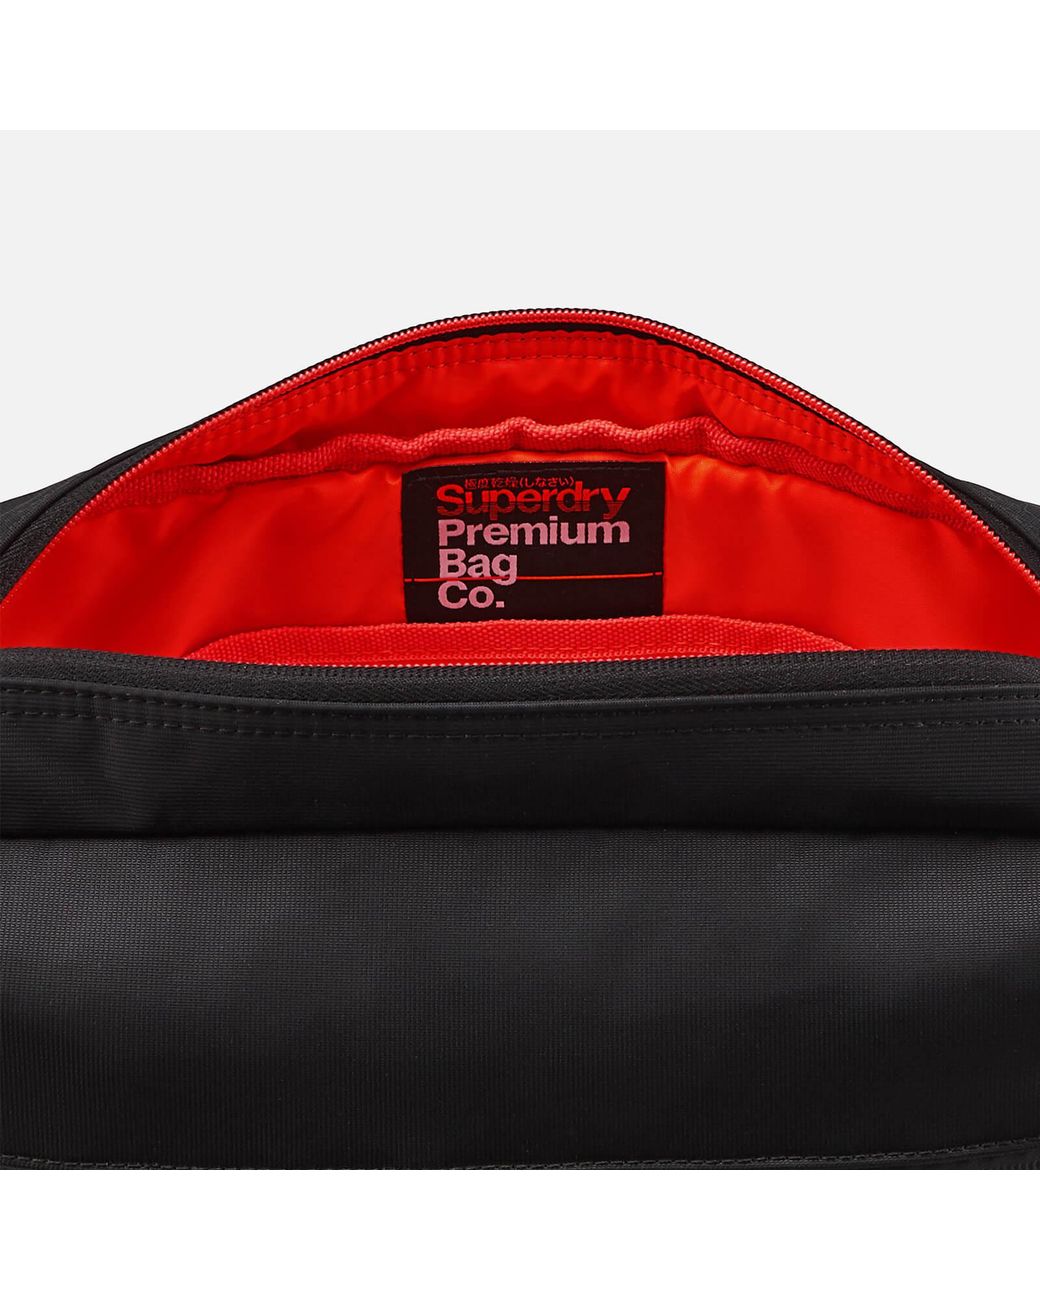 Superdry Expander Lineman Messenger Bag for Men | Lyst Canada